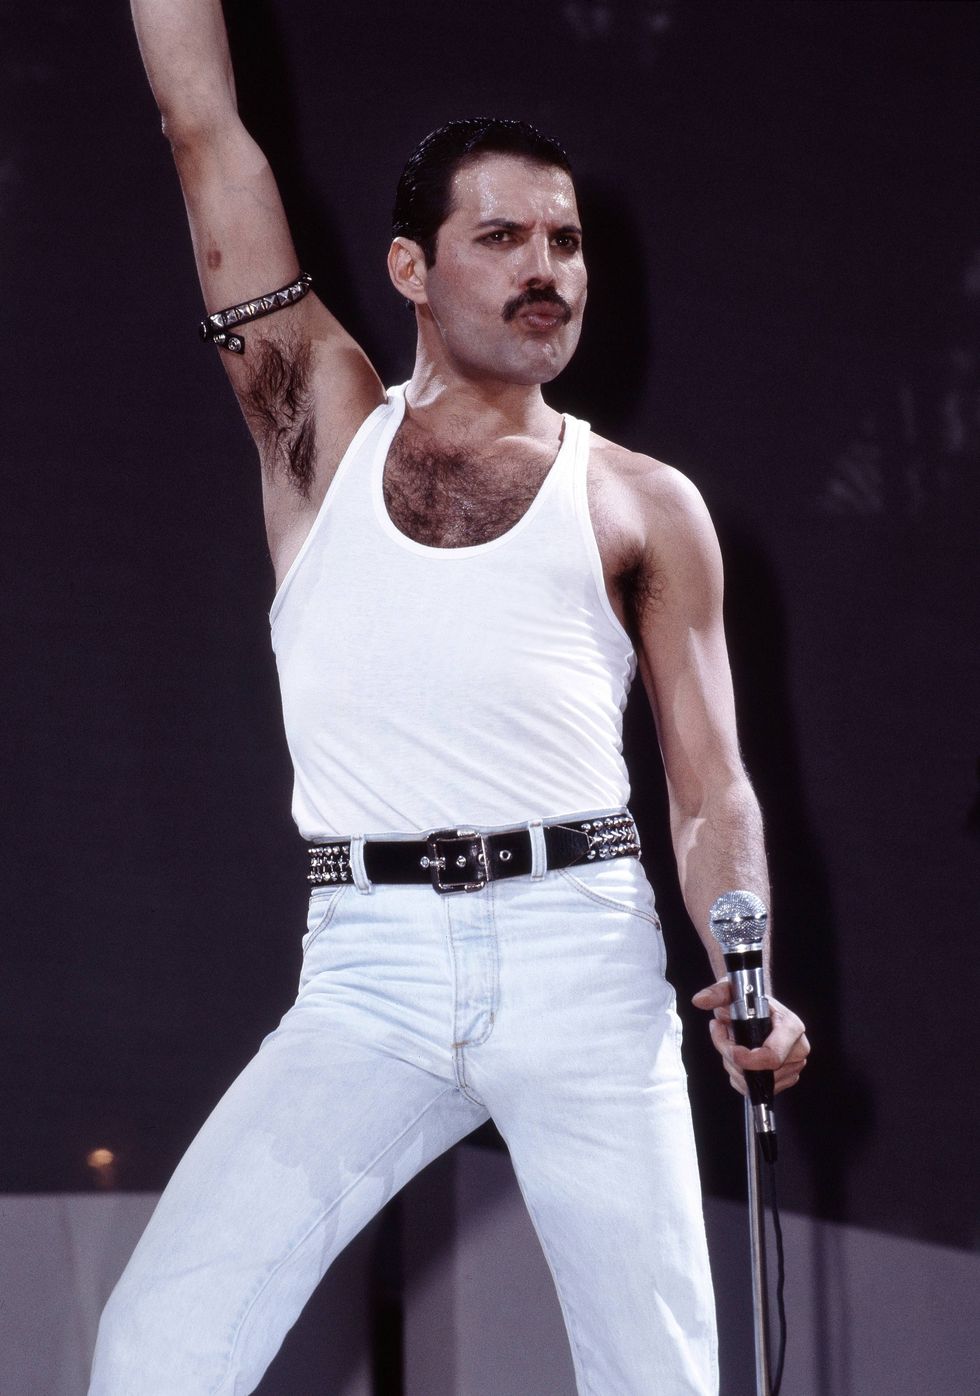 How Did Freddie Mercury Die? Inside His Battle With HIV/AIDS